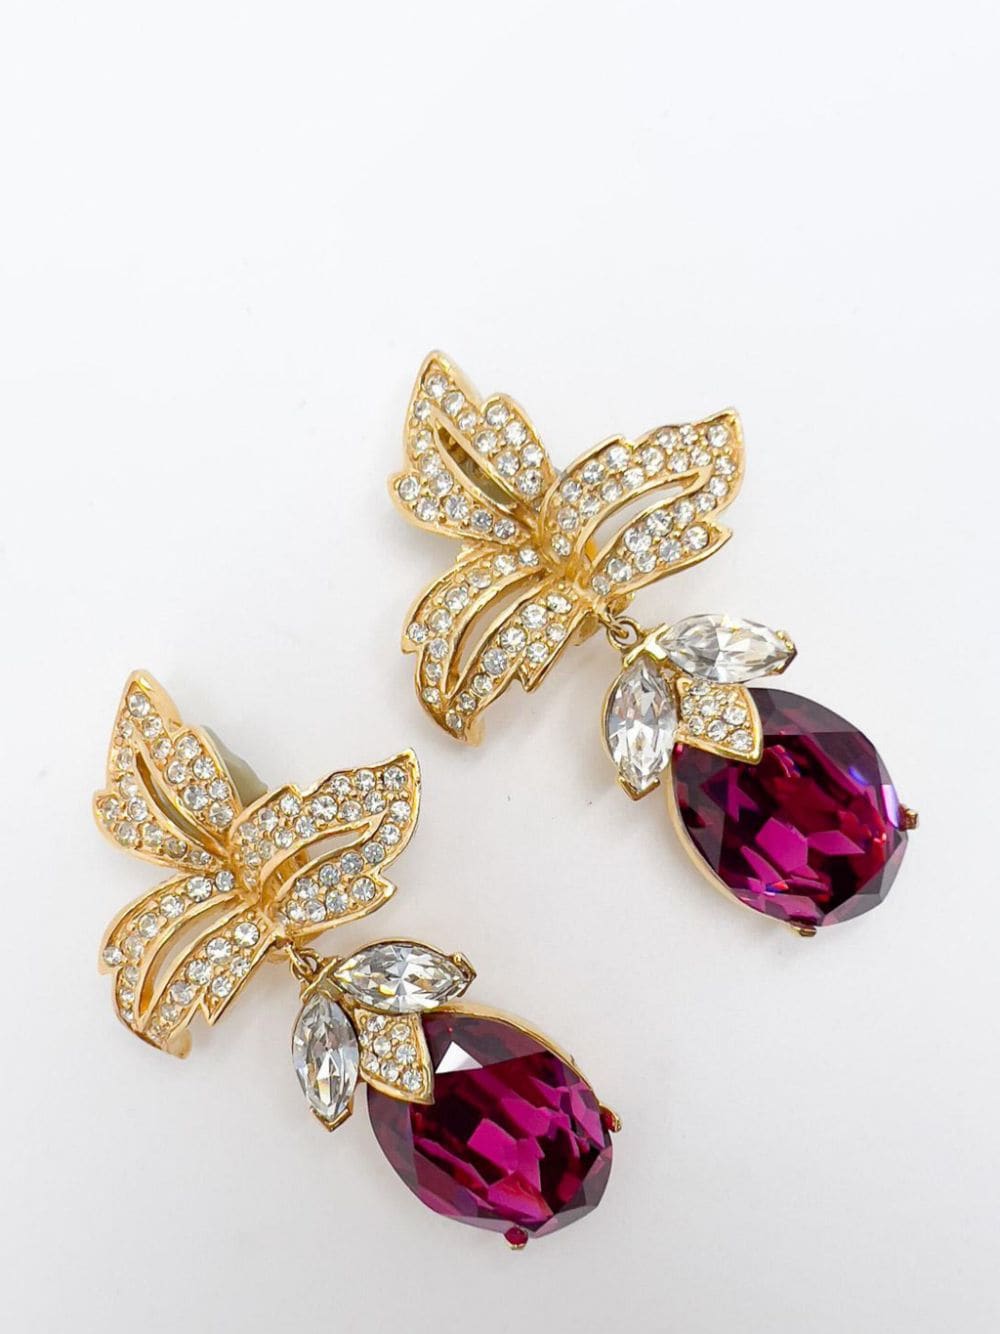 Jennifer Gibson Jewellery Vintage Ciner Hot Pink Crystal Floral Earrings 1980s - Goud